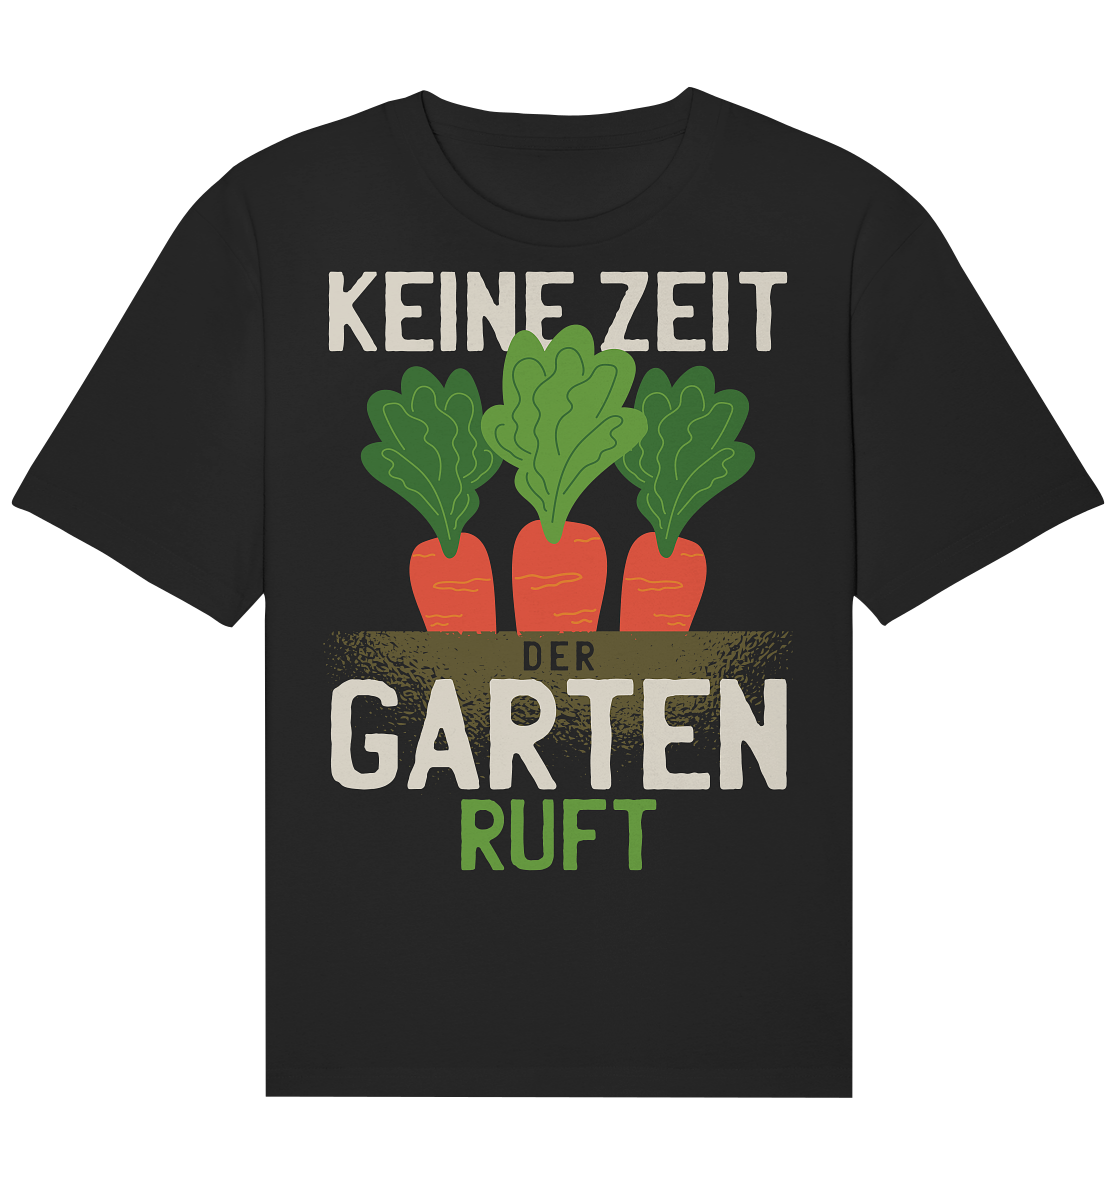 Keine Zeit der Garten ruft - Organic Relaxed Shirt - Online Kaufhaus München